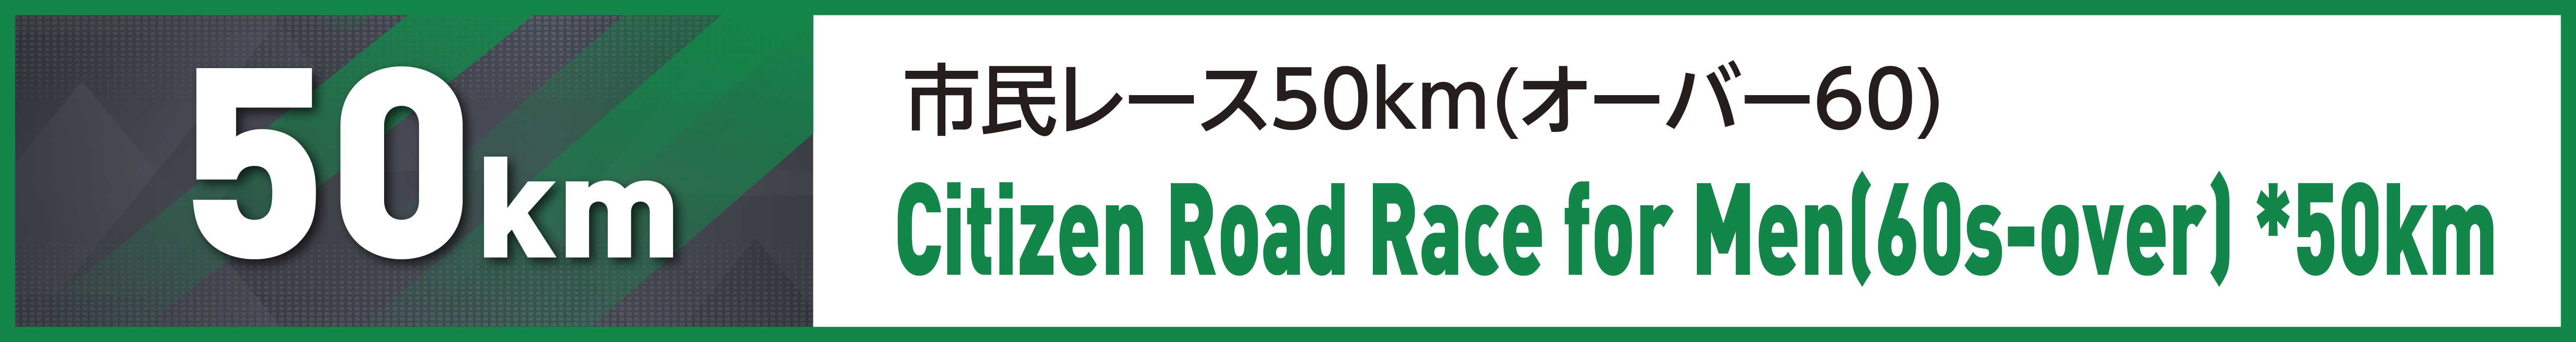 市民レース50km(オーバー60)